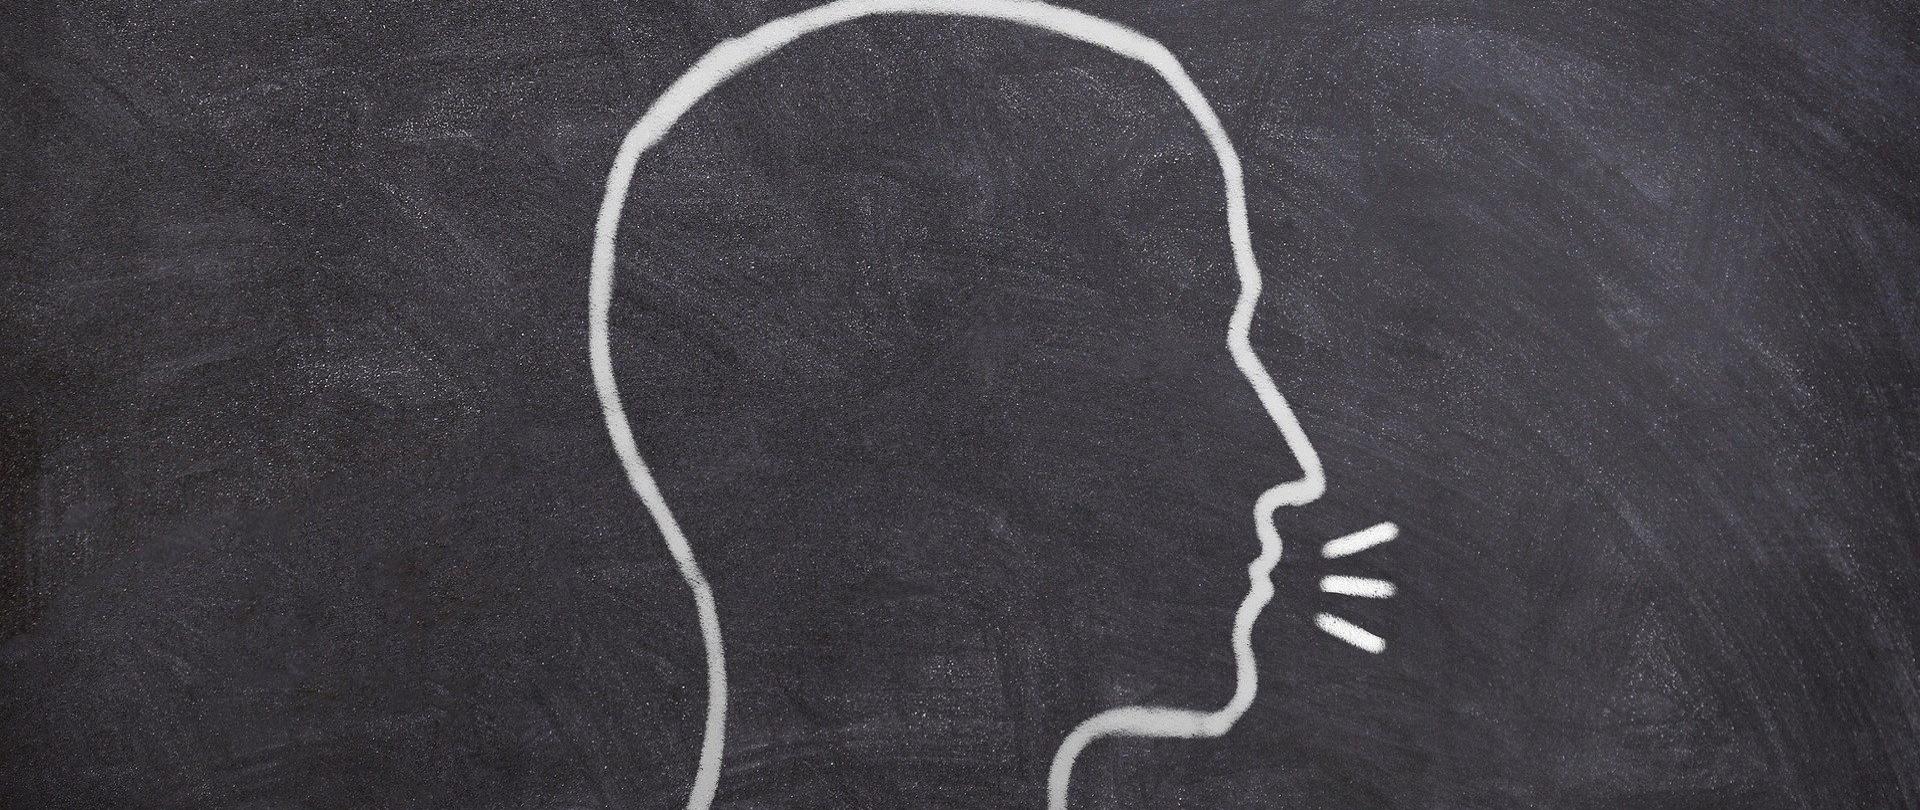 na kredowej tablicy narysowana głowa człowieka i promienie - symbol wysłuchania